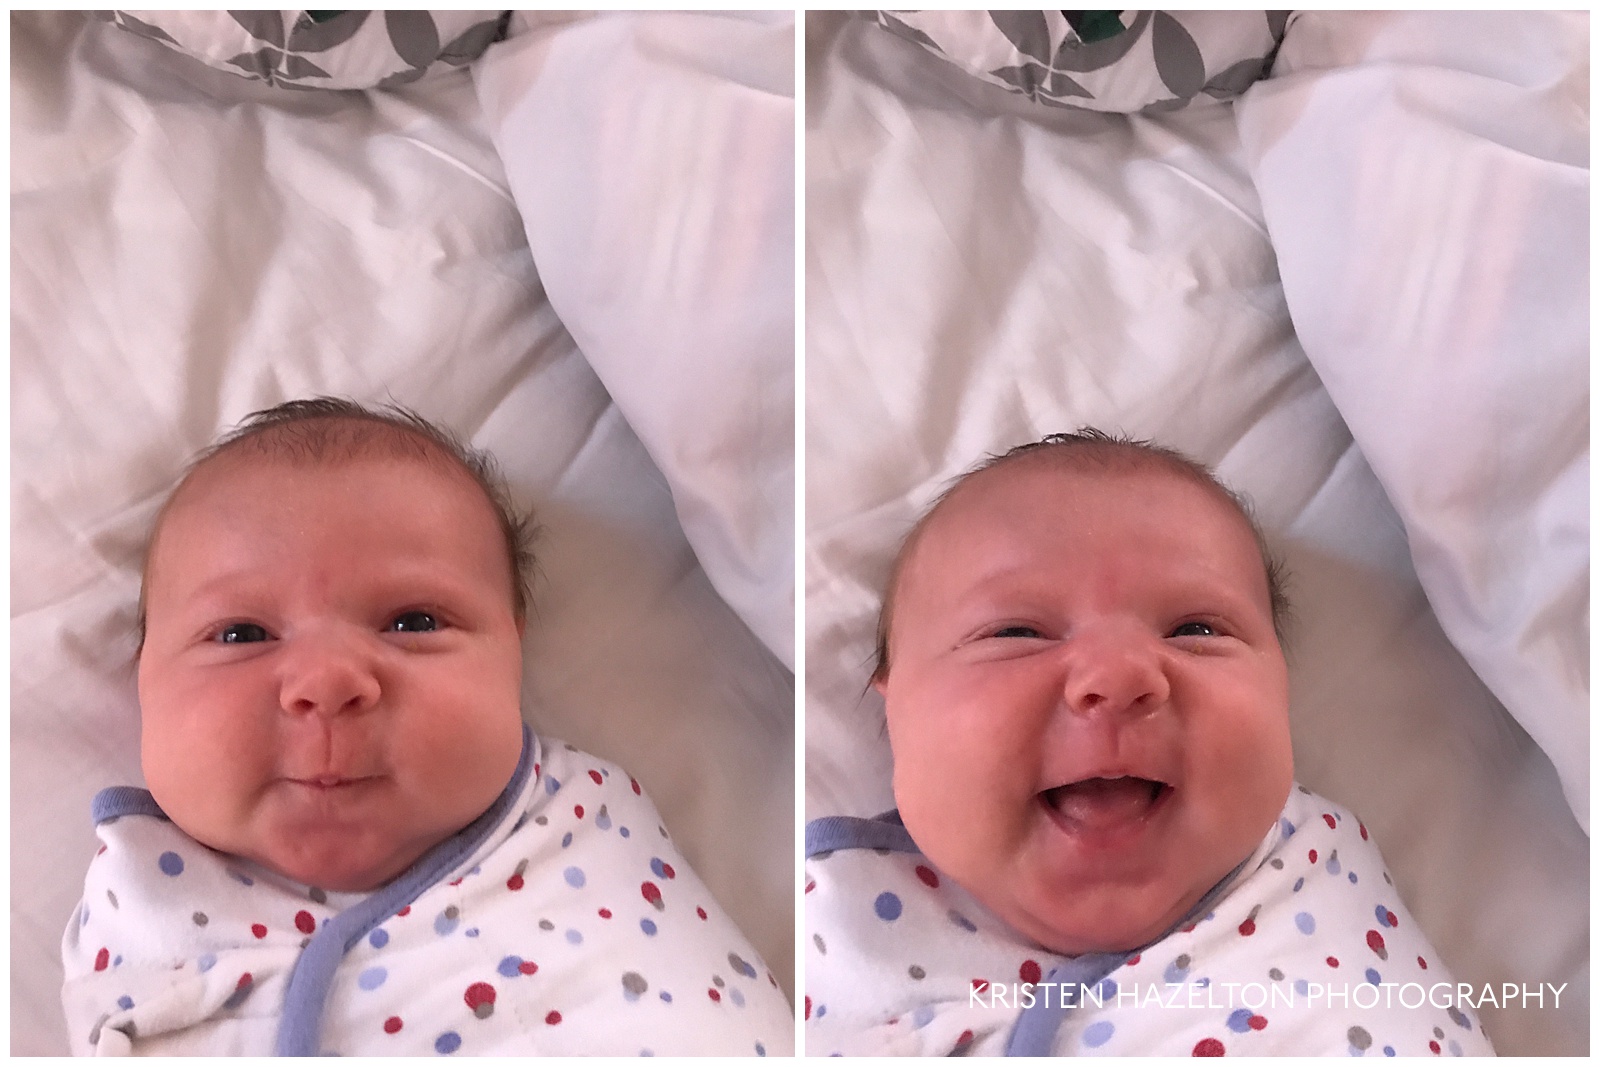 Smiling, swaddled baby